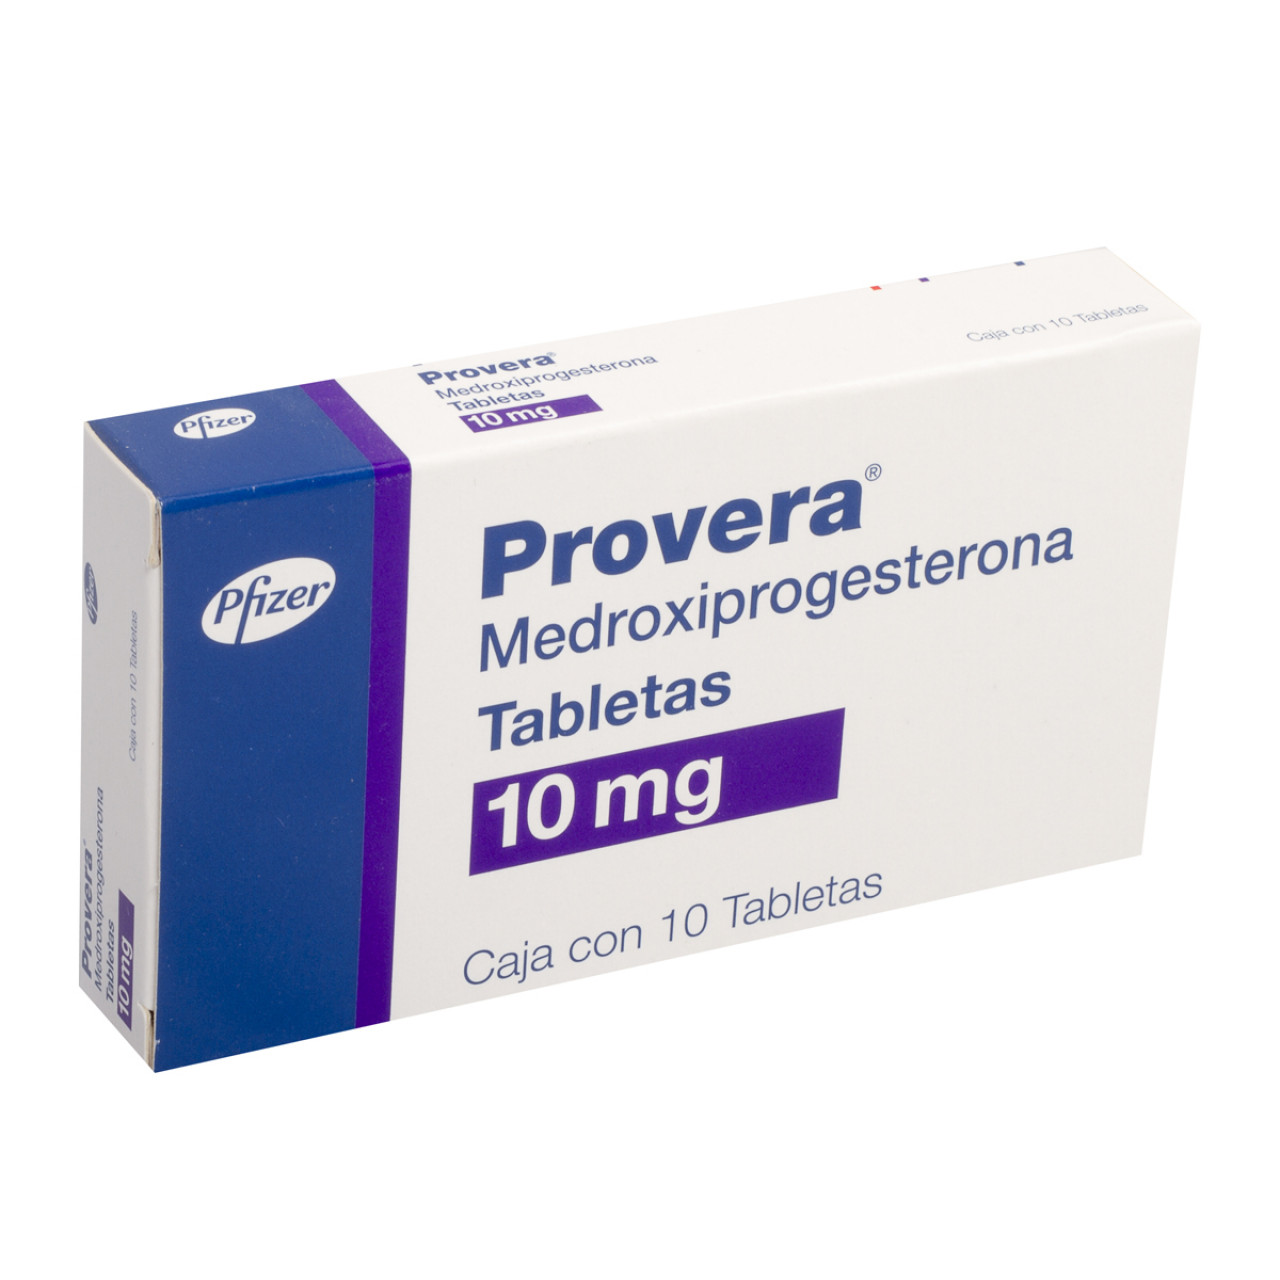 Medroxiprogesterona: ¿Qué es y cuánto cuesta?